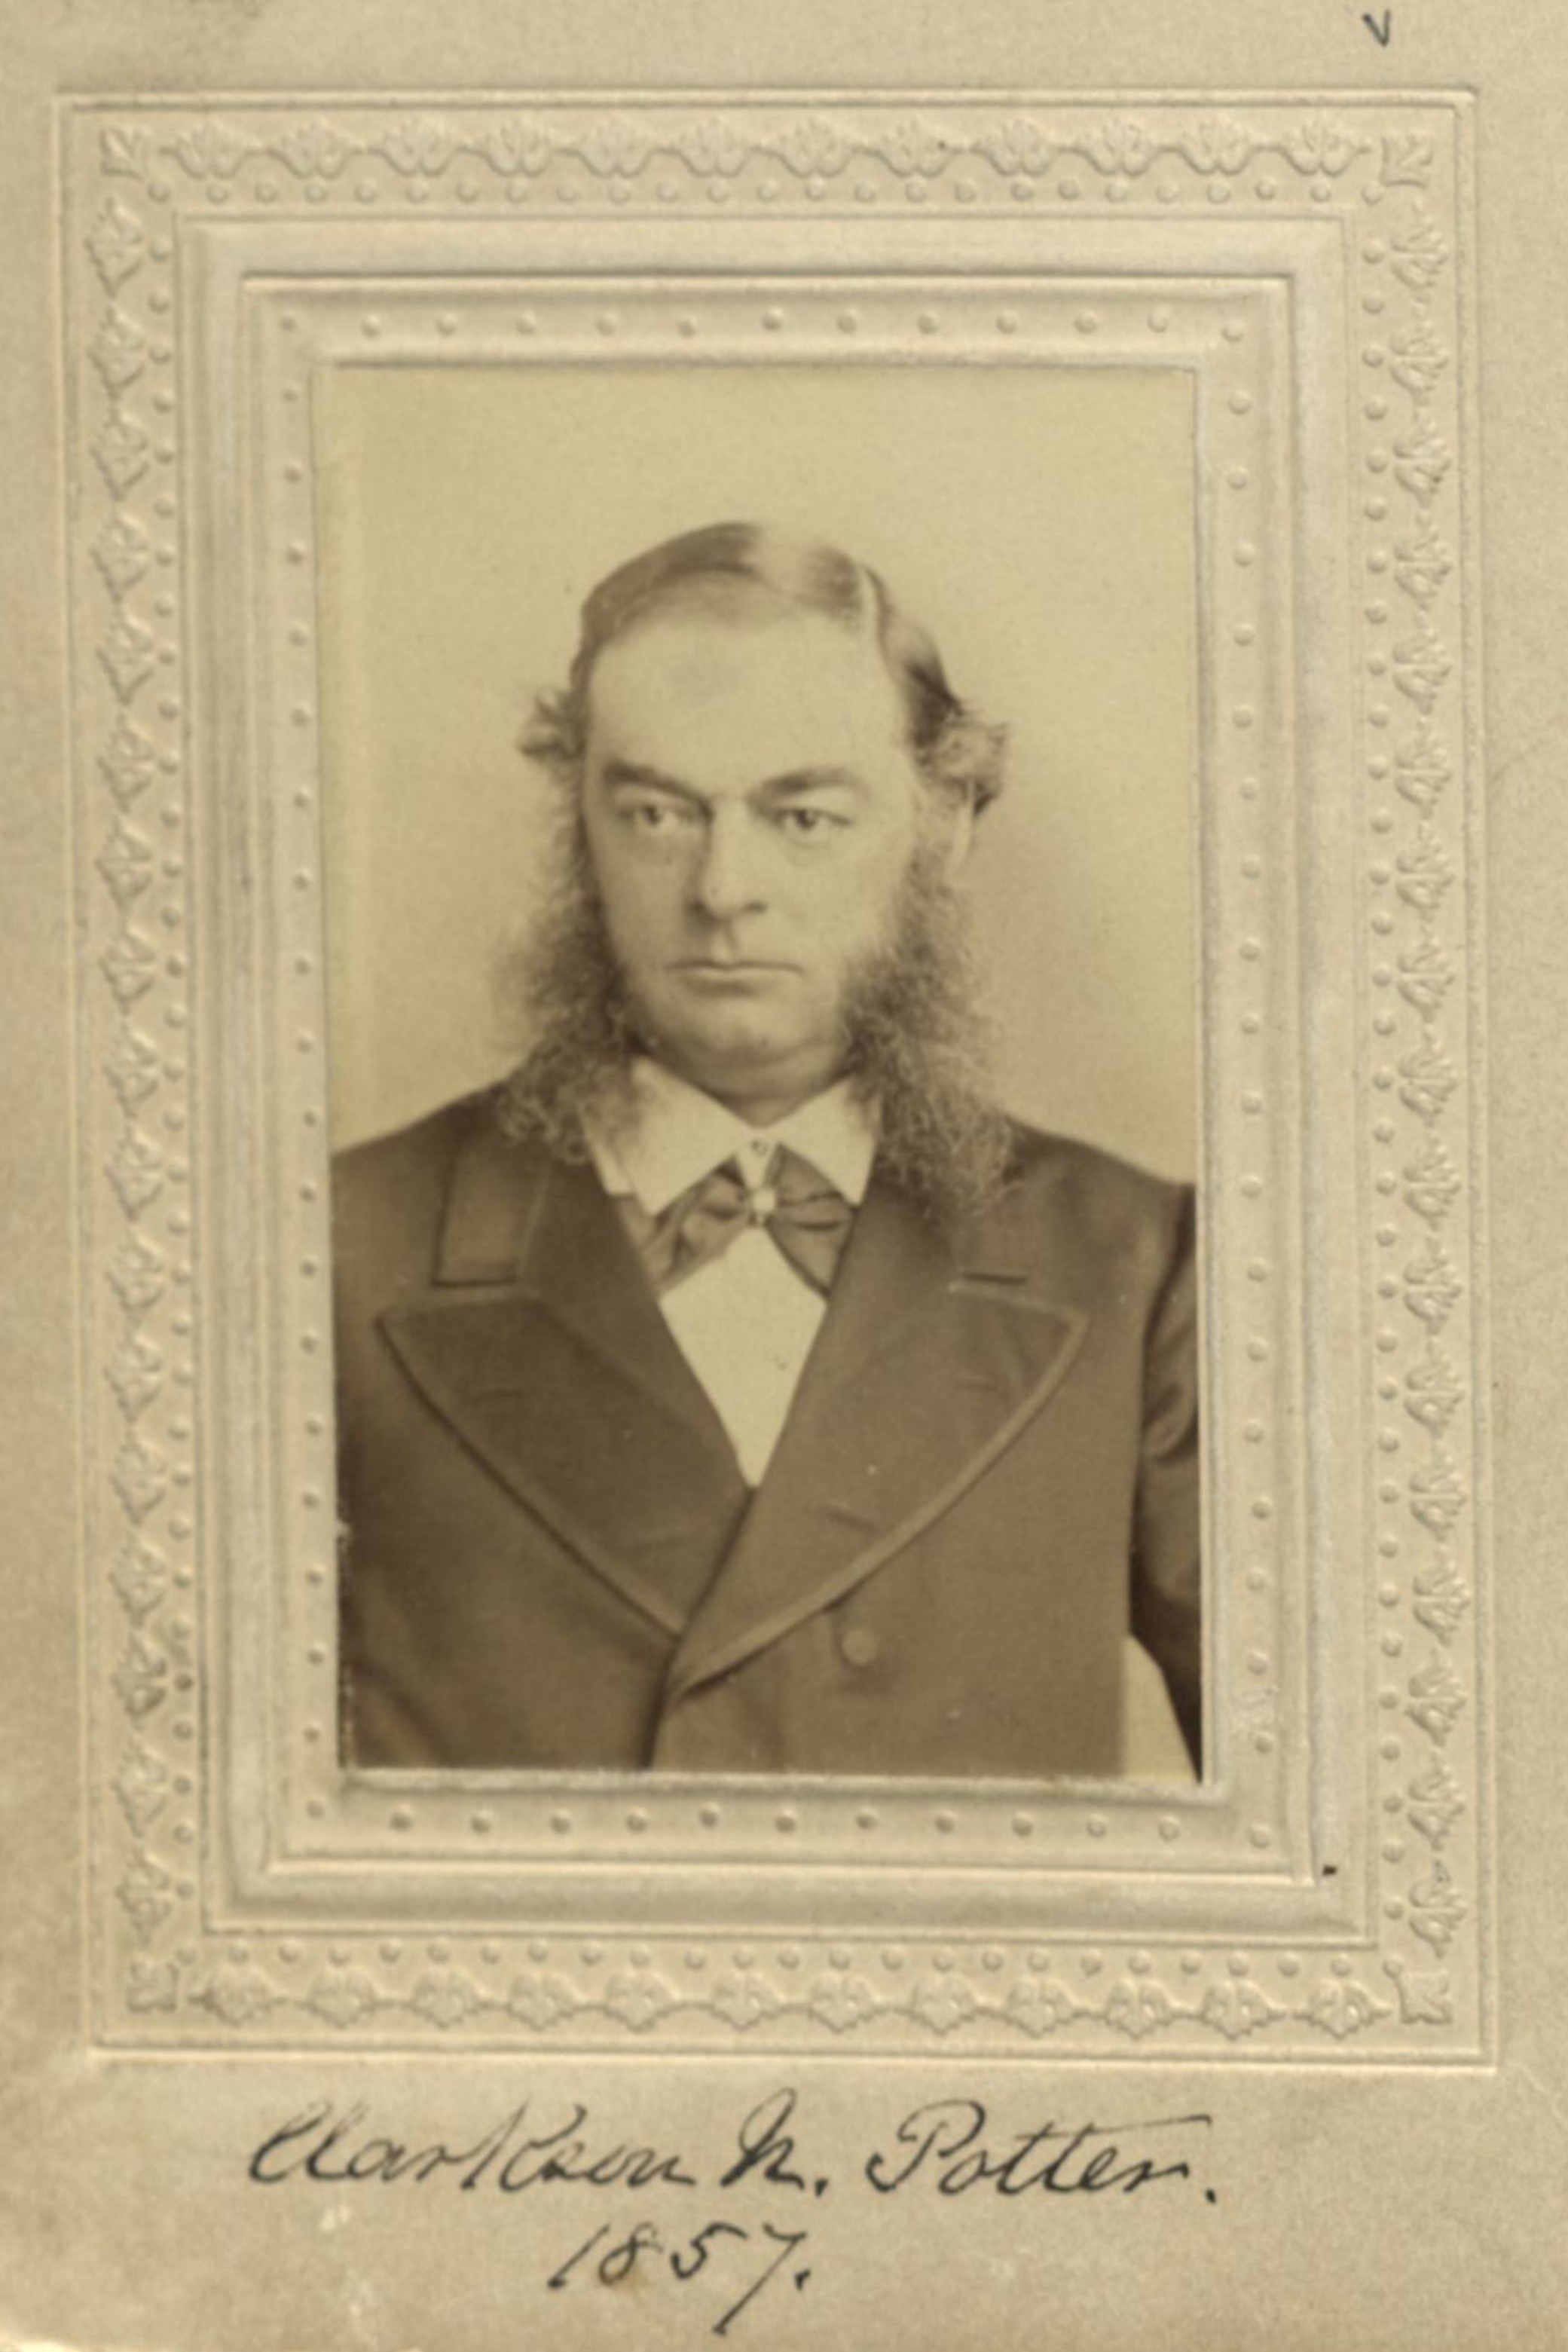 Member portrait of Clarkson N. Potter